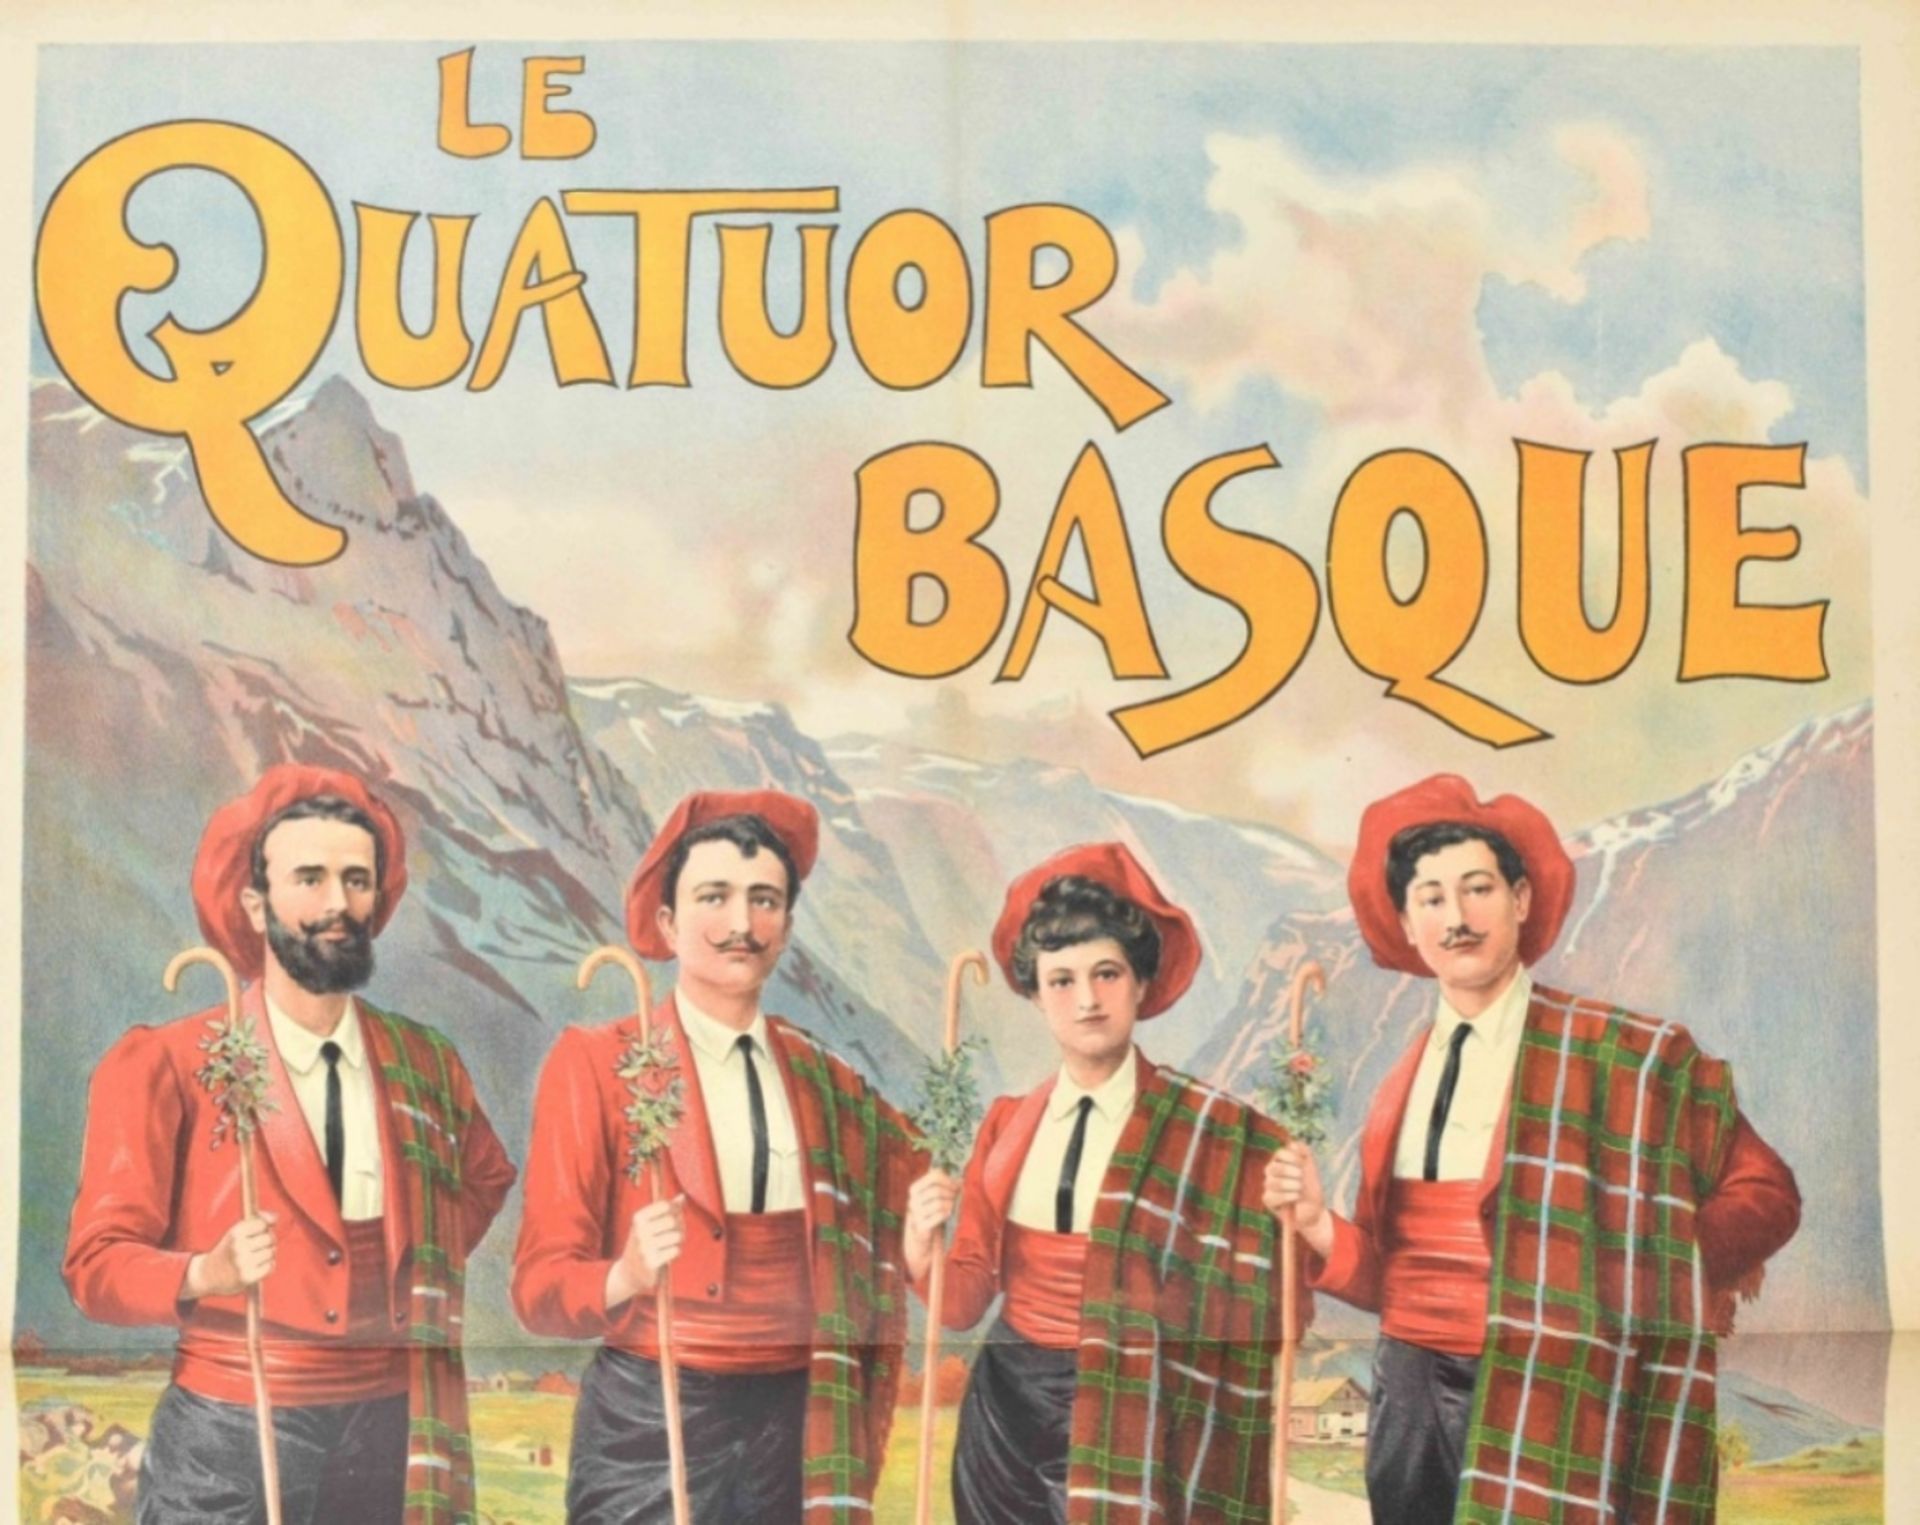 [Folklore] [Spain] Les quatuor Basque Ambassadeur Casino de Paris. Friedländer, Hamburg, 1901 - Bild 5 aus 5